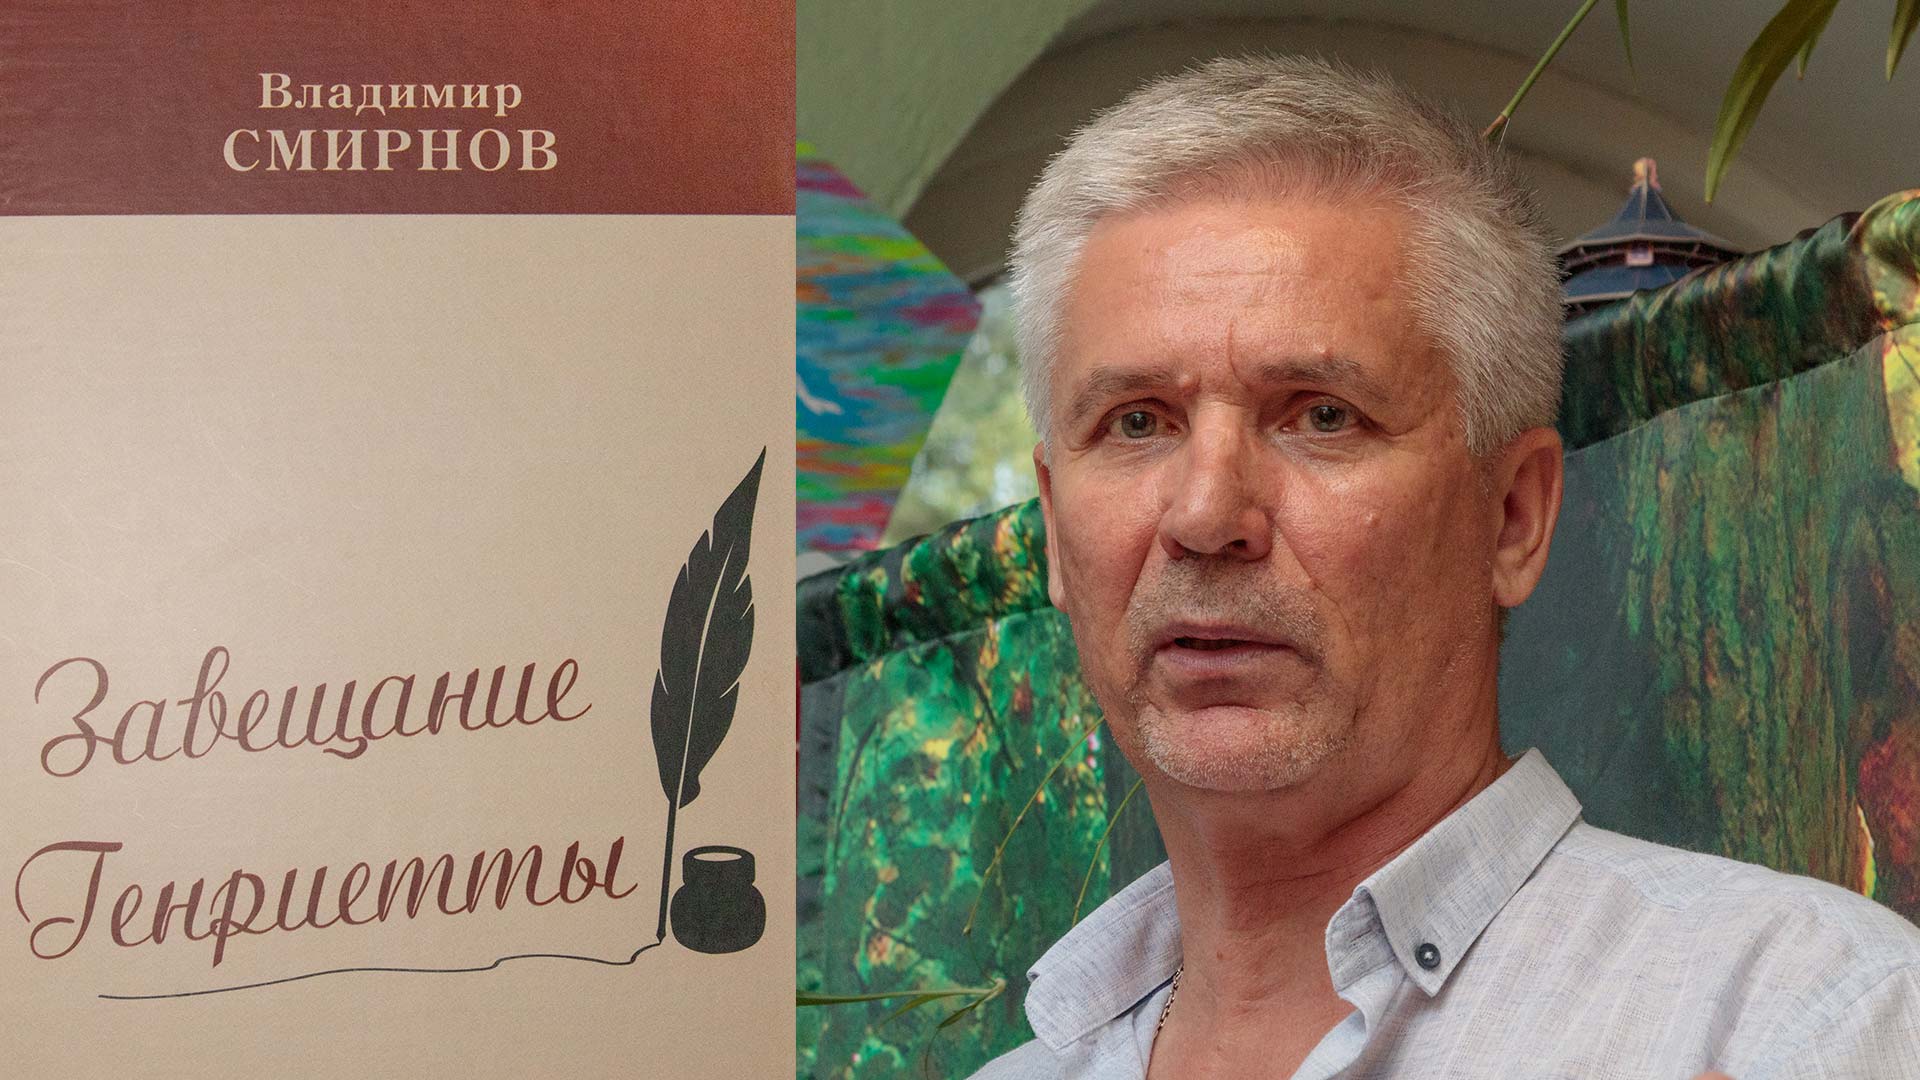 Смирнов и его книга